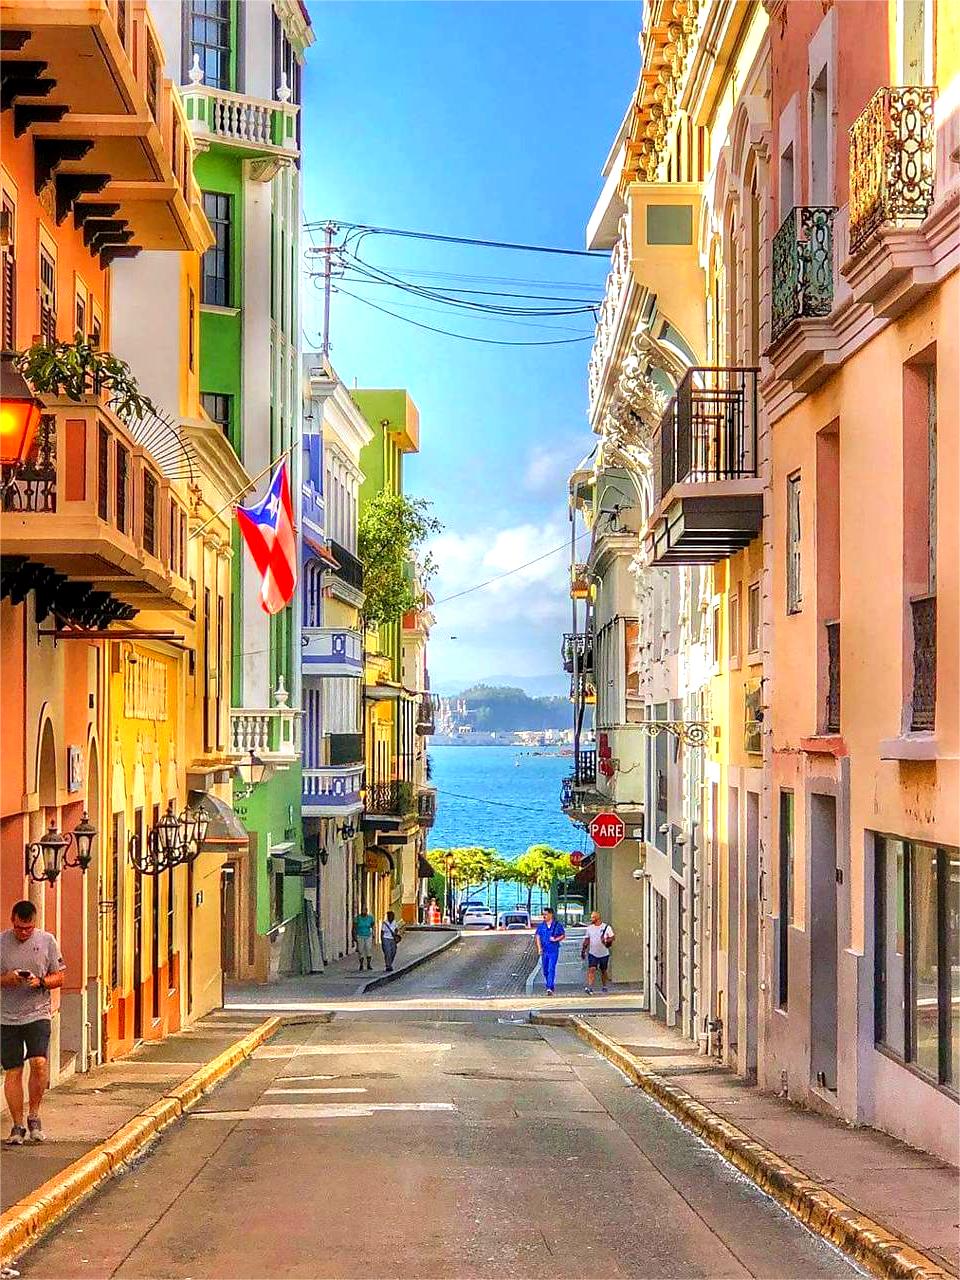 波多黎各6日游 | 色彩缤纷的浪漫岛屿